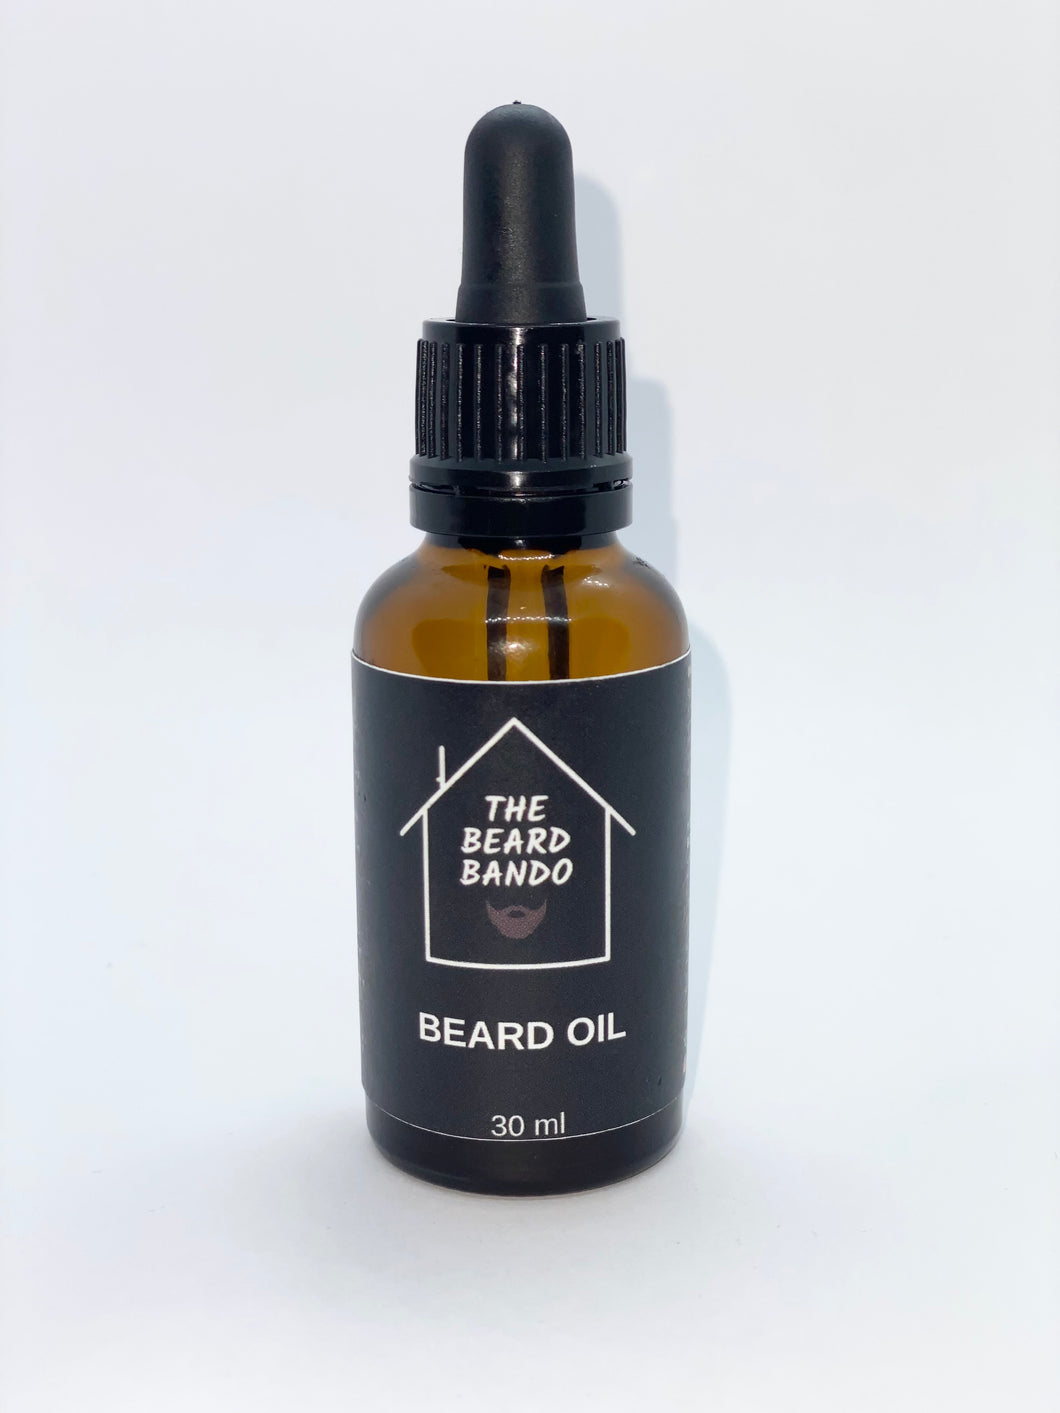 Bando Beard Oil #6 by The Beard Bando